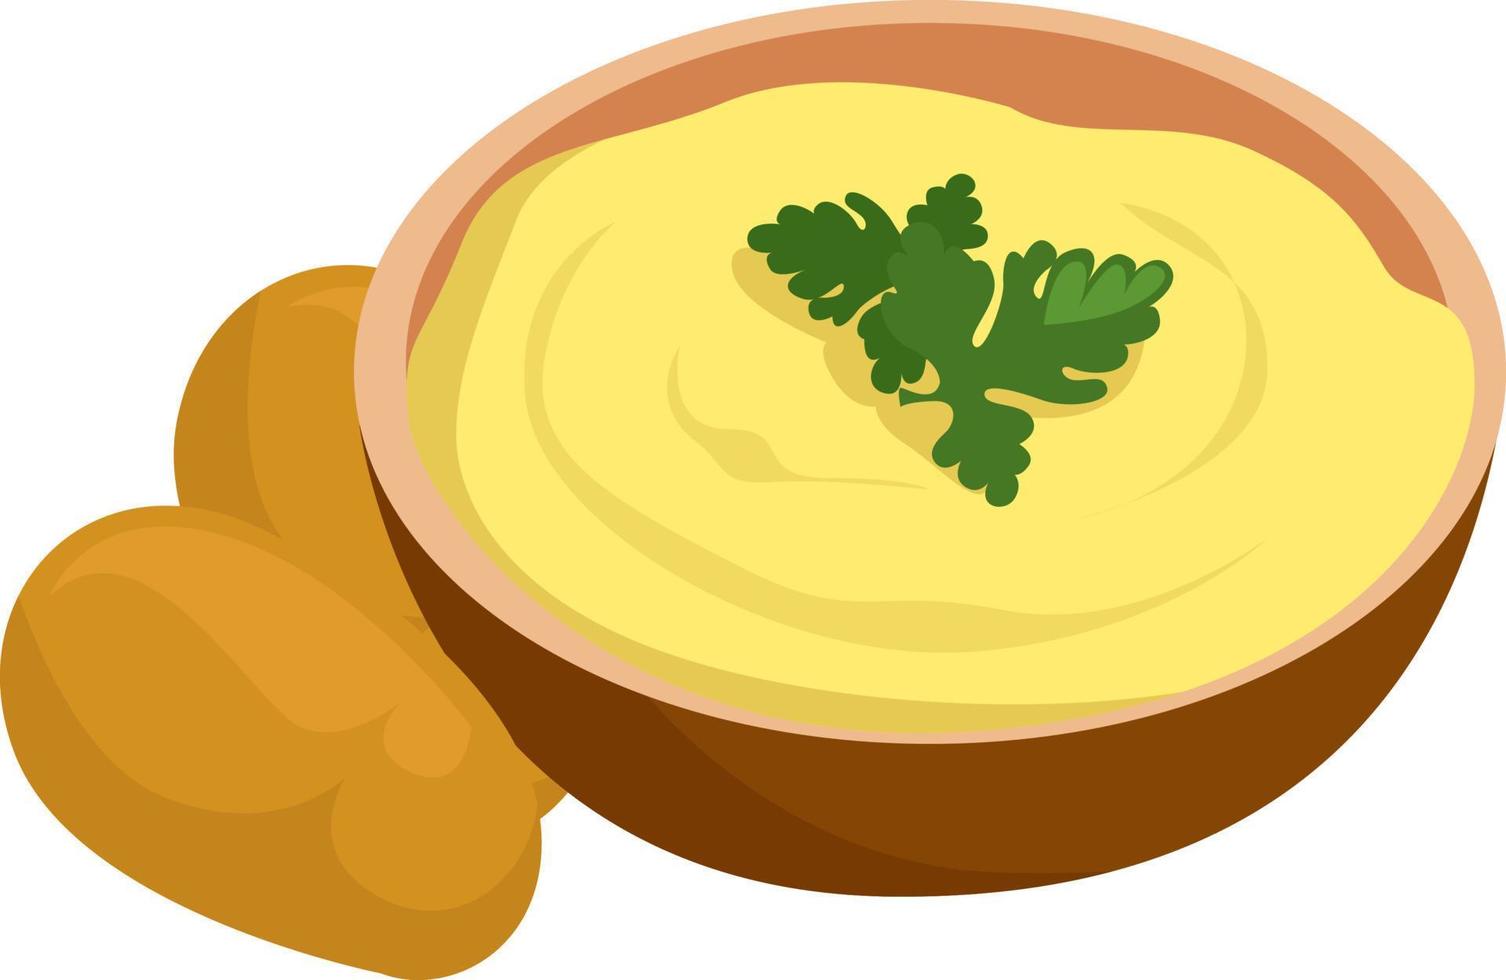 Mashed potatoes, illustration, vector on white background